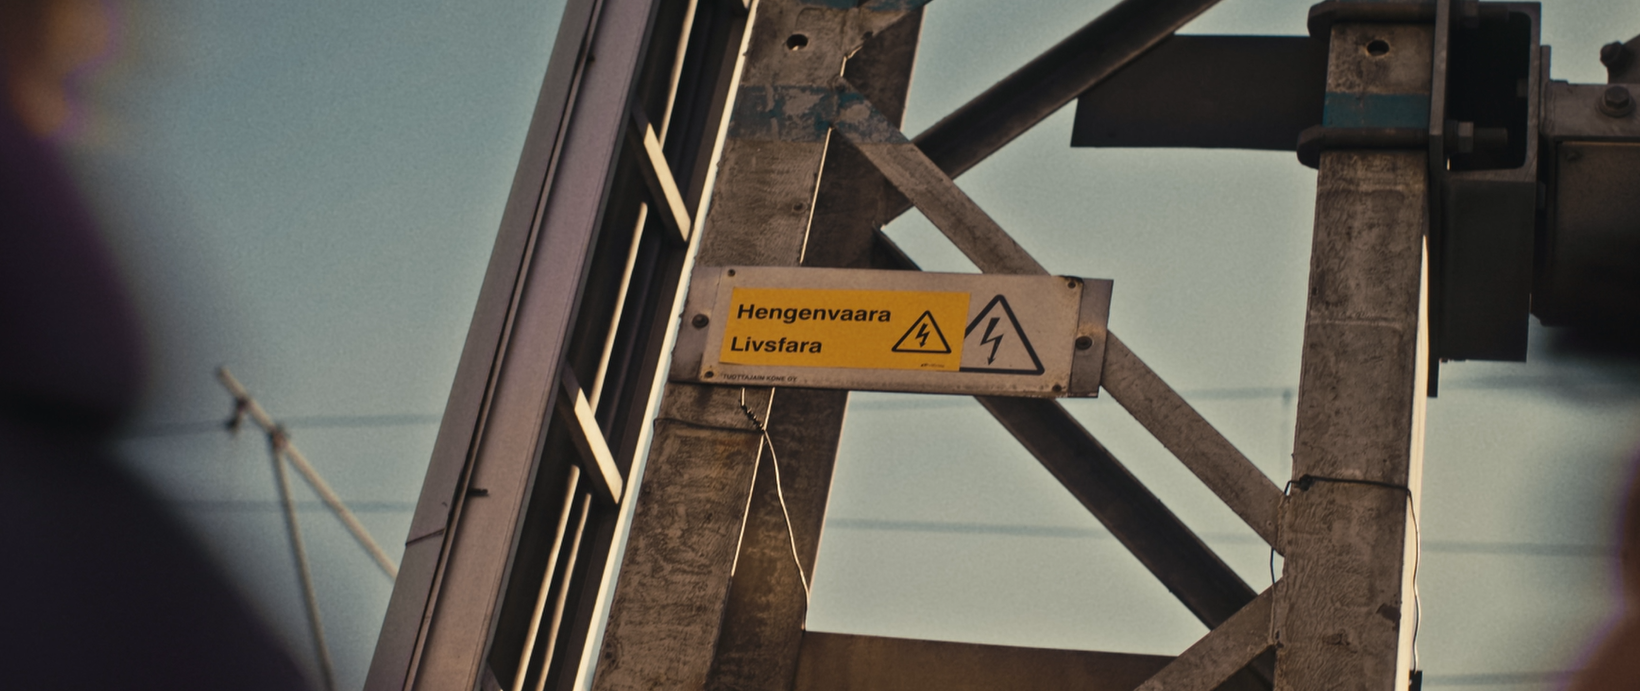 En gul varningsskylt med texten "Livsfara" och en blixtsymbol monterad på en metallkonstruktion. Skylten indikerar fara för elektrisk stöt och högspänning.